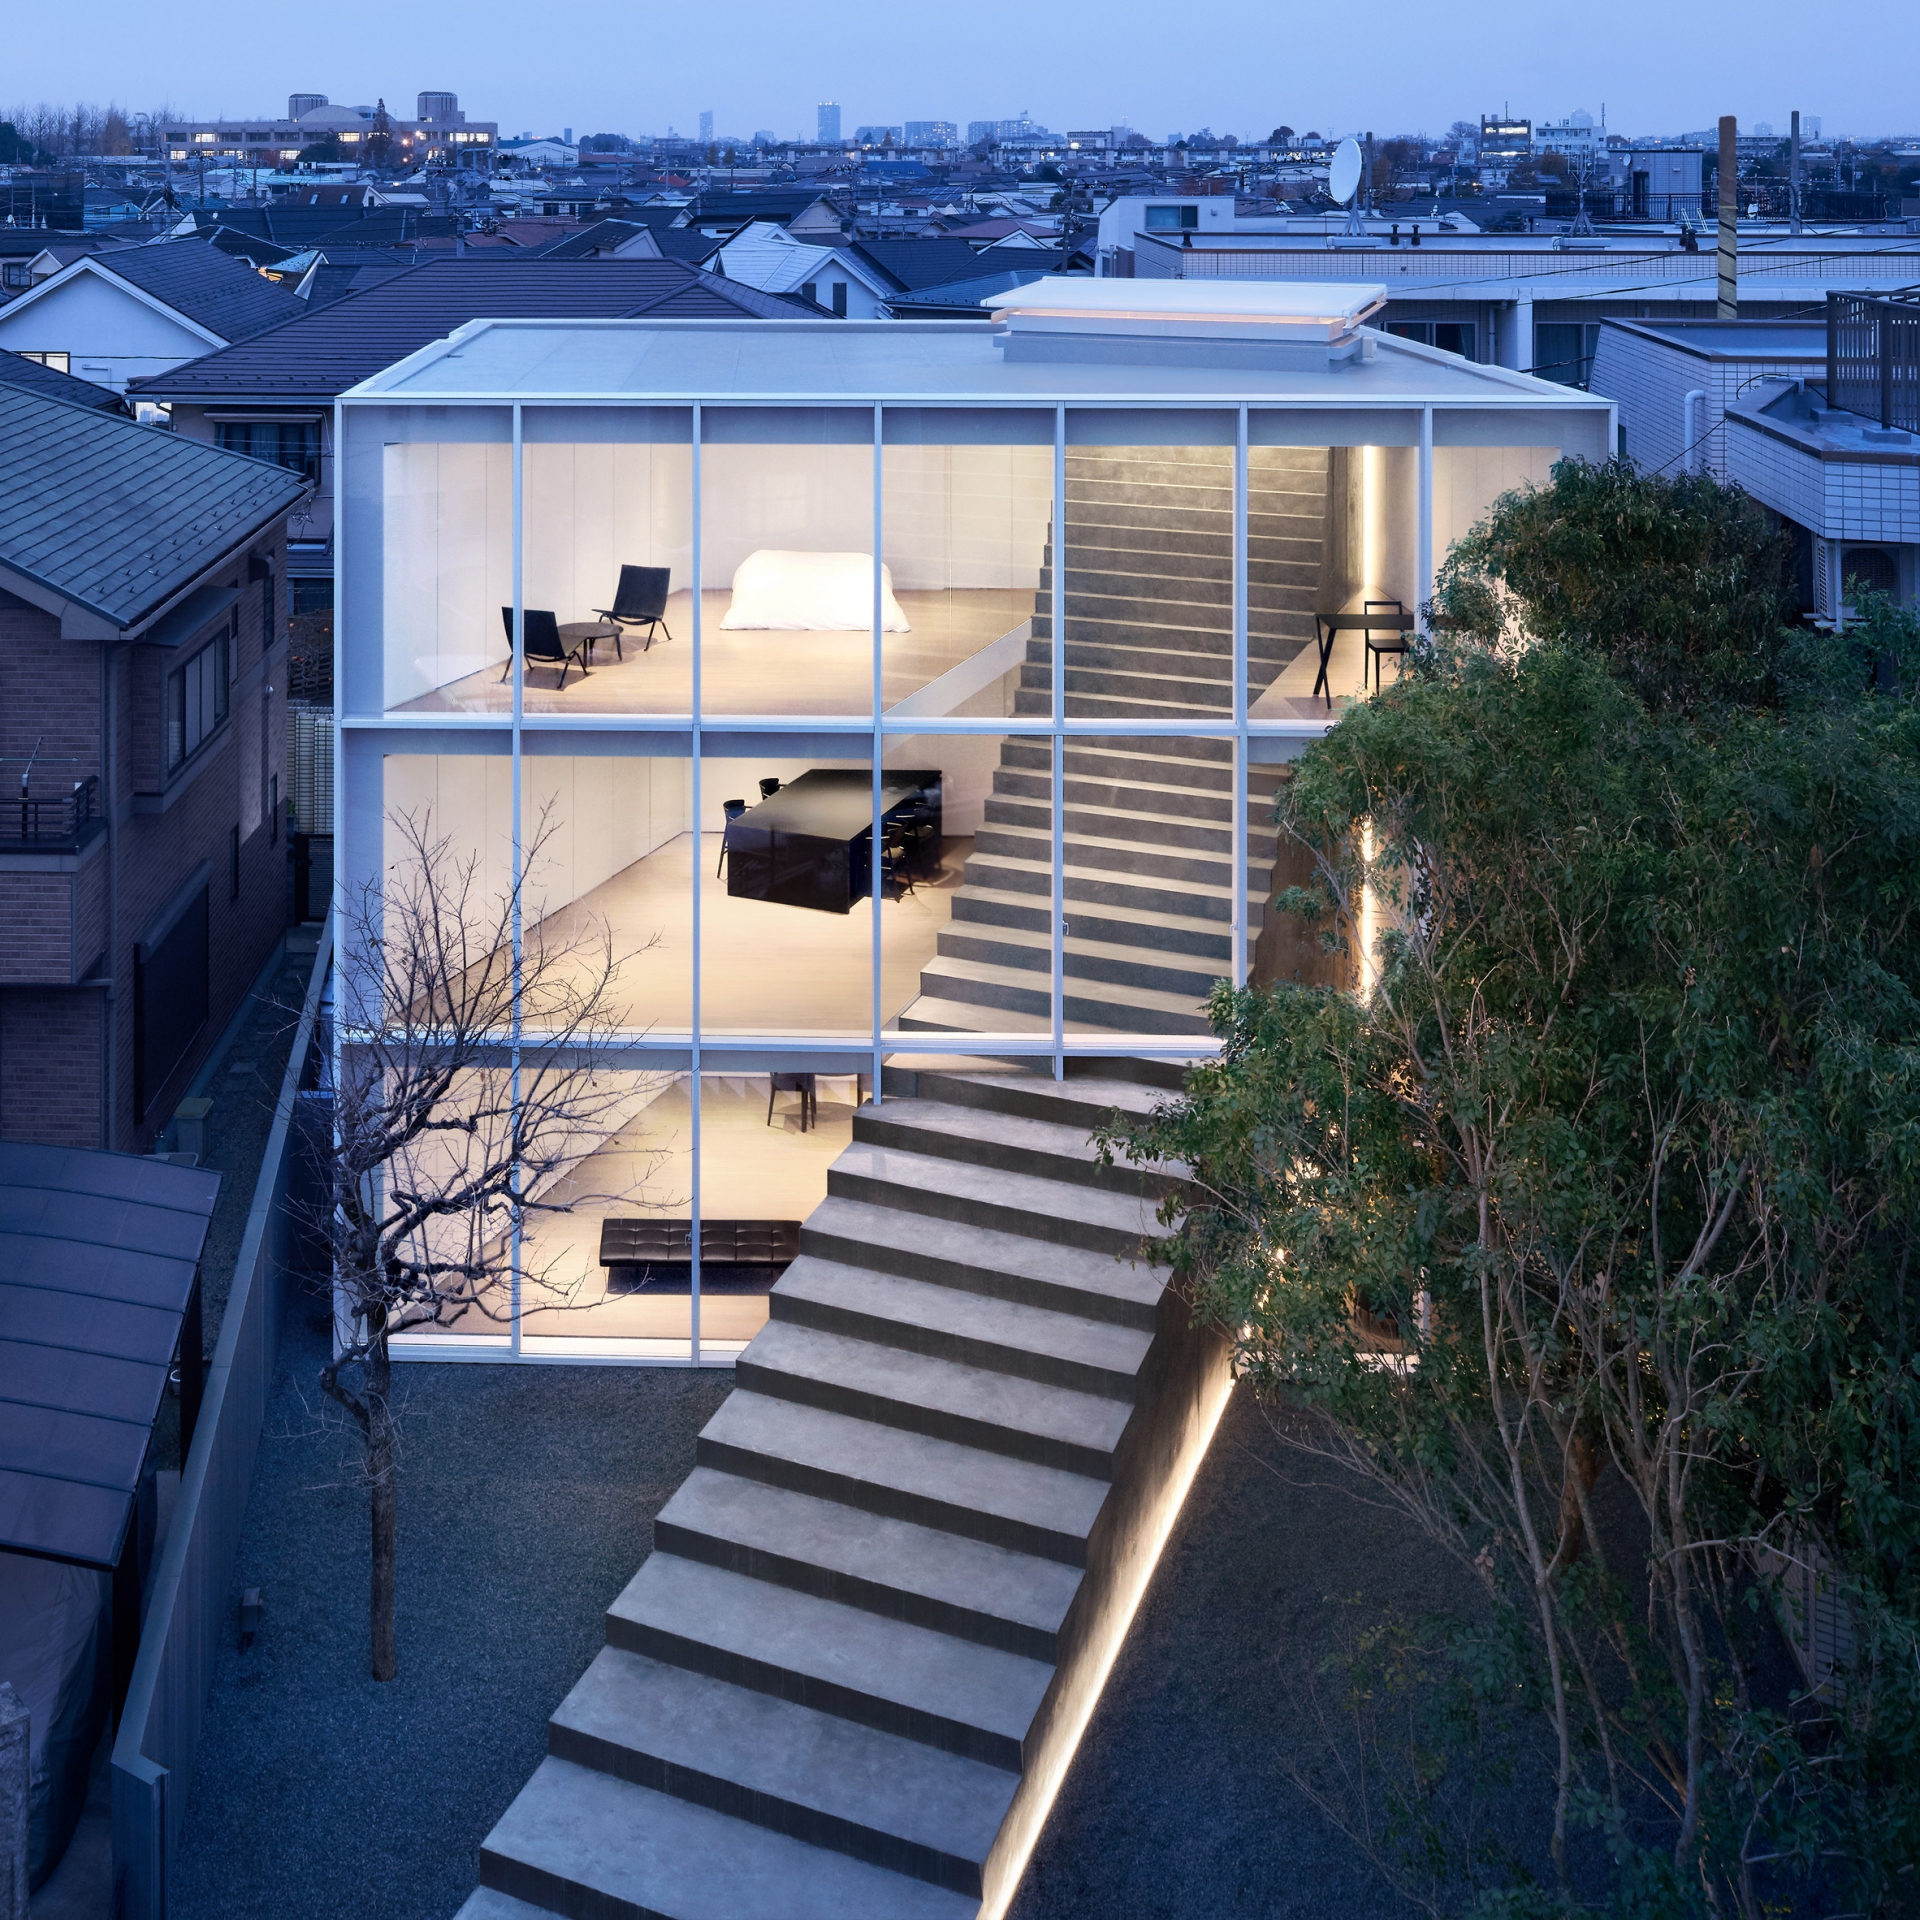 Tiếp tục là một công trình tại Nhật Bản - Stairway House với chiếc cầu thang khổng lồ cắt ngang 3 tầng của ngôi nhà, tiếp tục đi ra ngoài qua mặt tiền lắp kính trong suốt và tiến thẳng ra sân vườn cực kỳ ấn tượng.